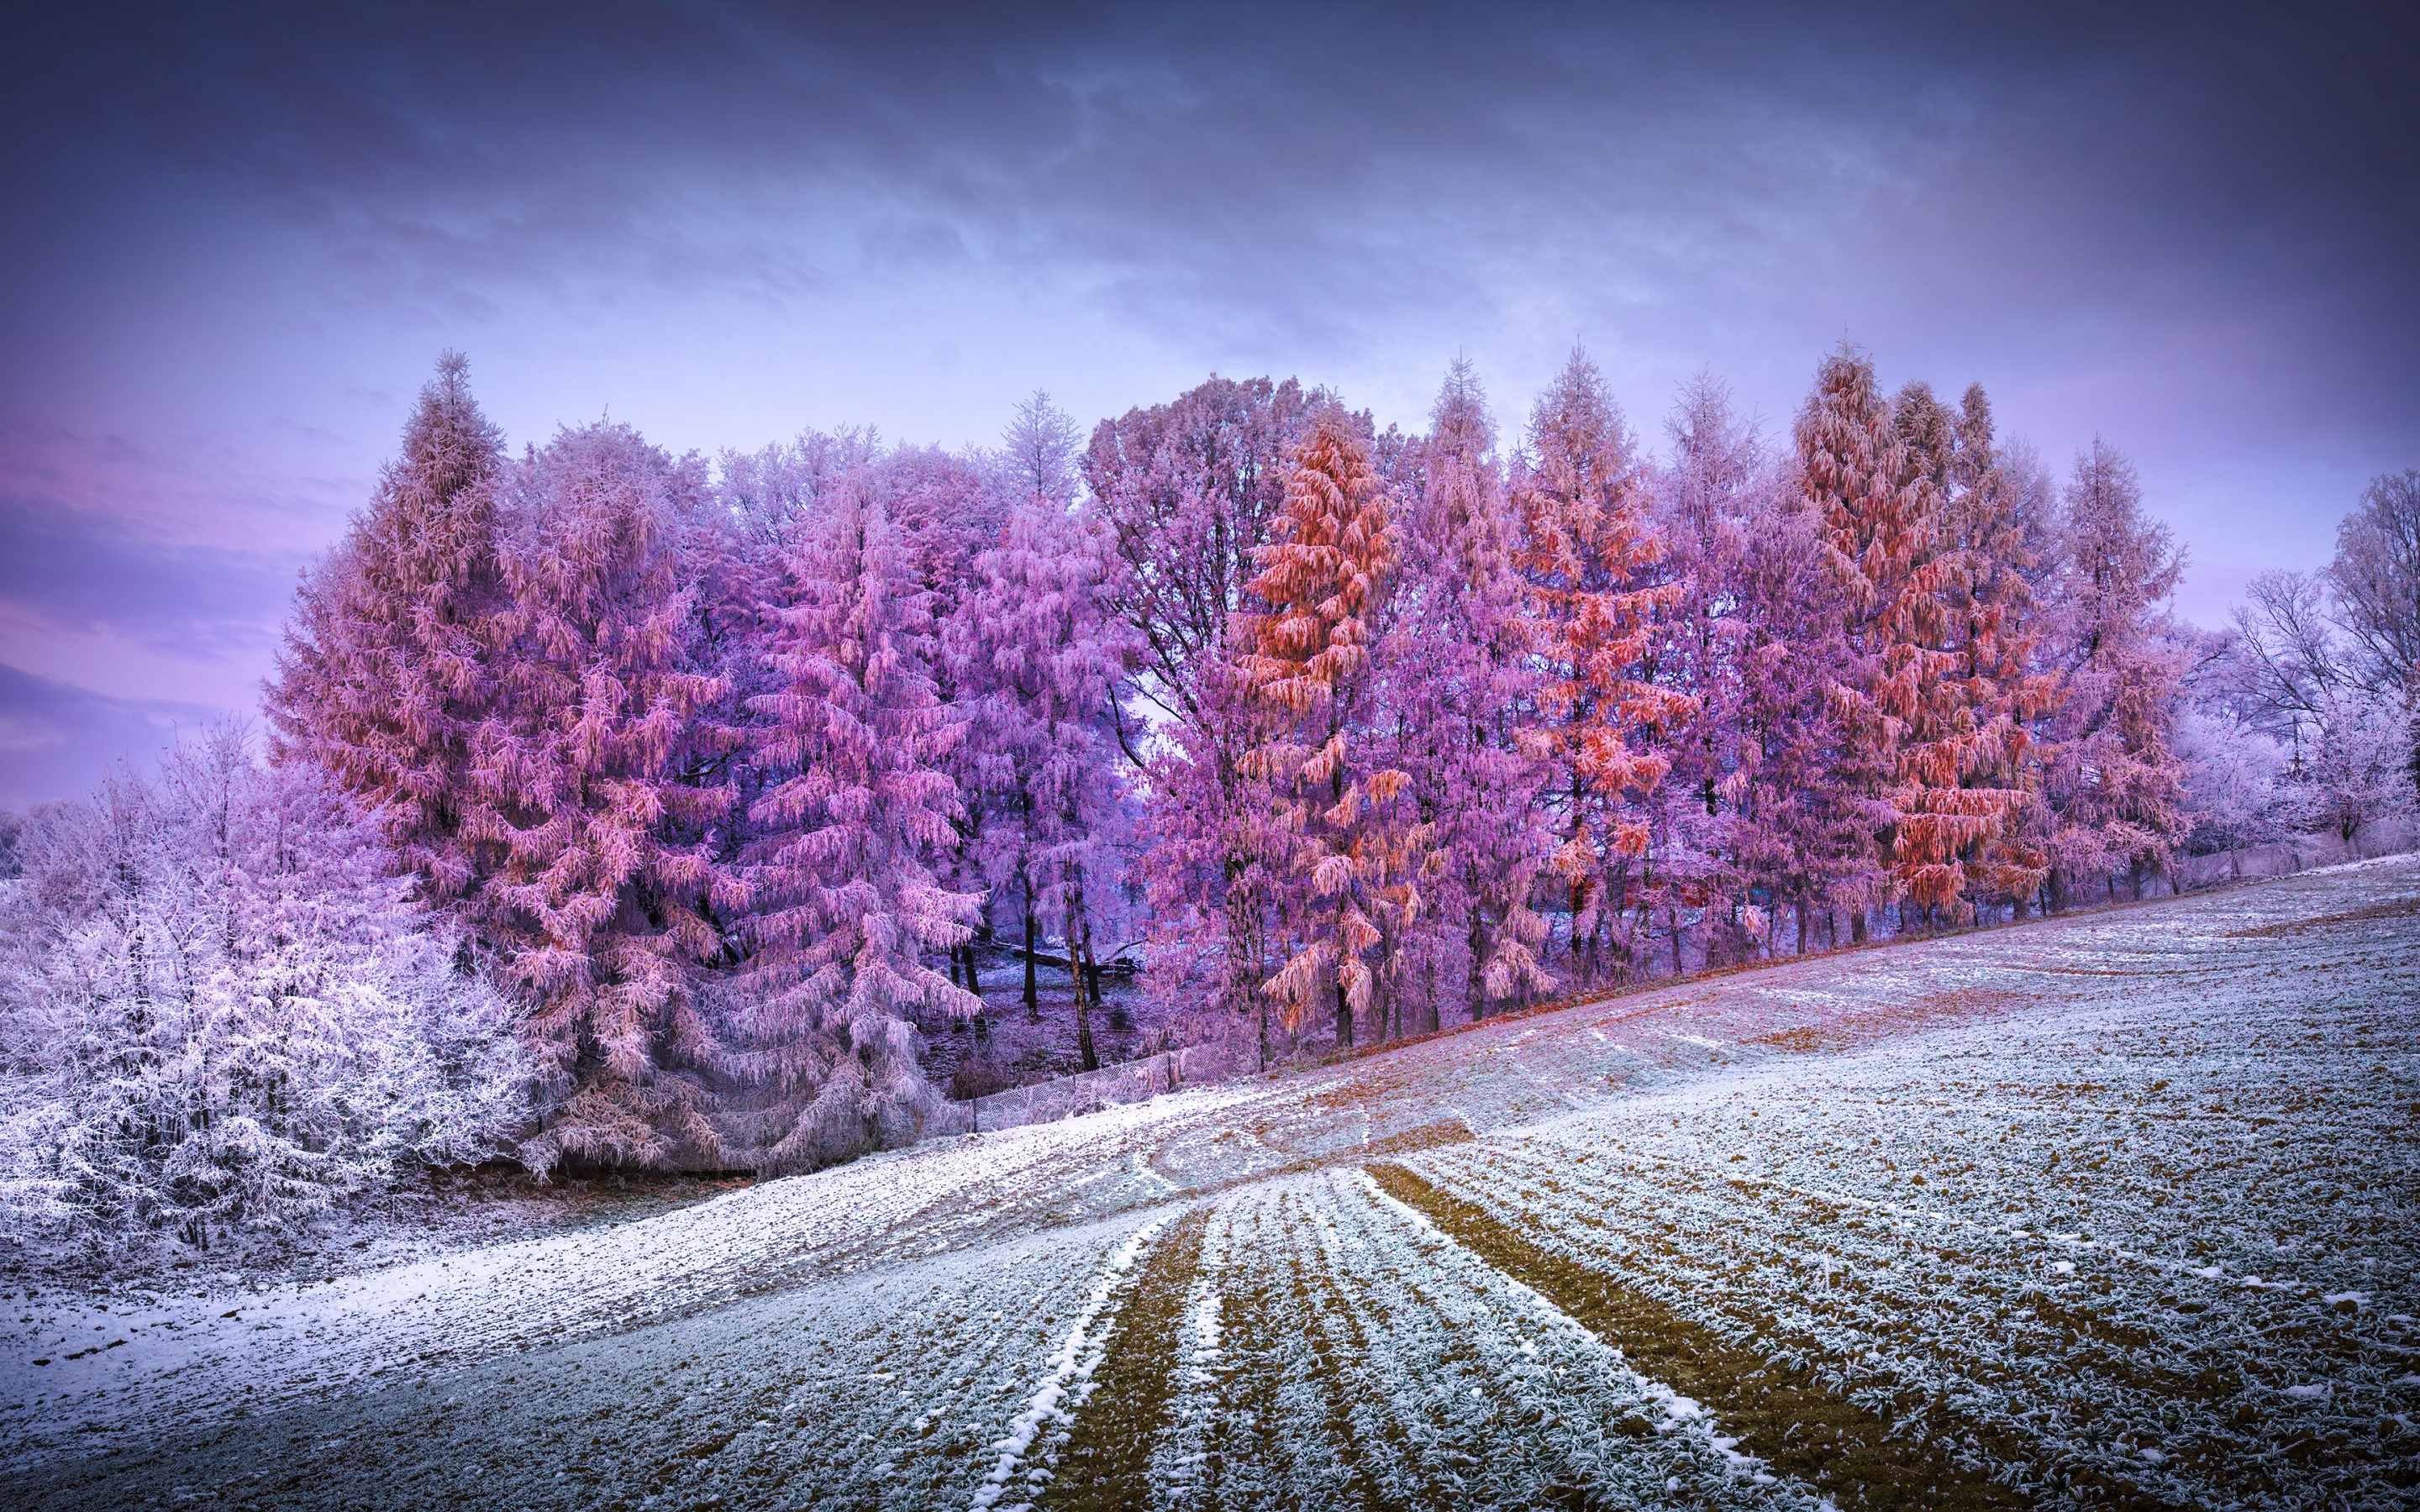 winter scenery wallpaper